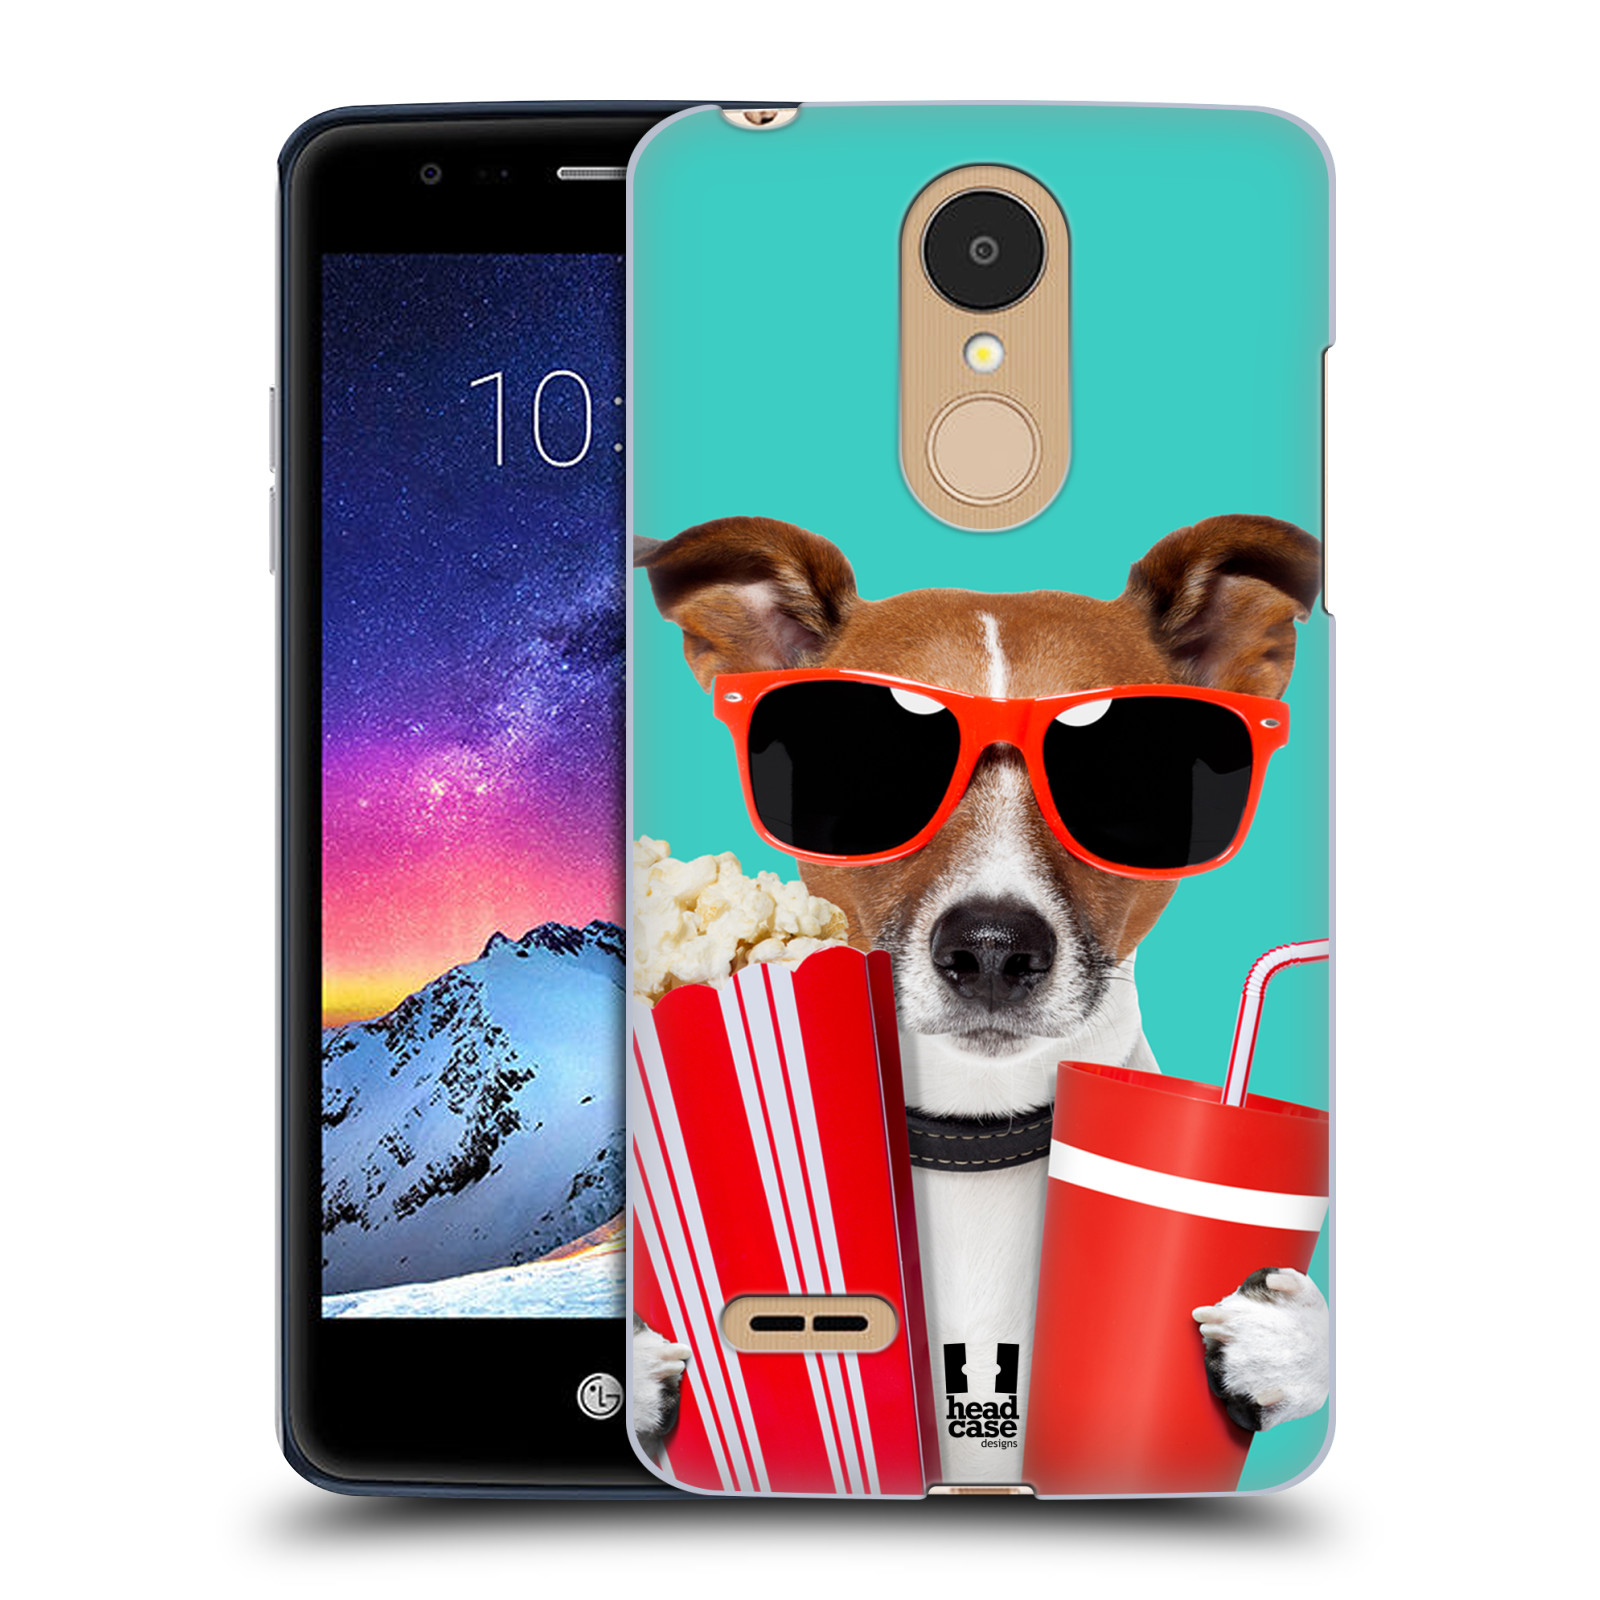 HEAD CASE plastový obal na mobil LG K9 / K8 2018 vzor Legrační zvířátka pejsek v kině s popkornem